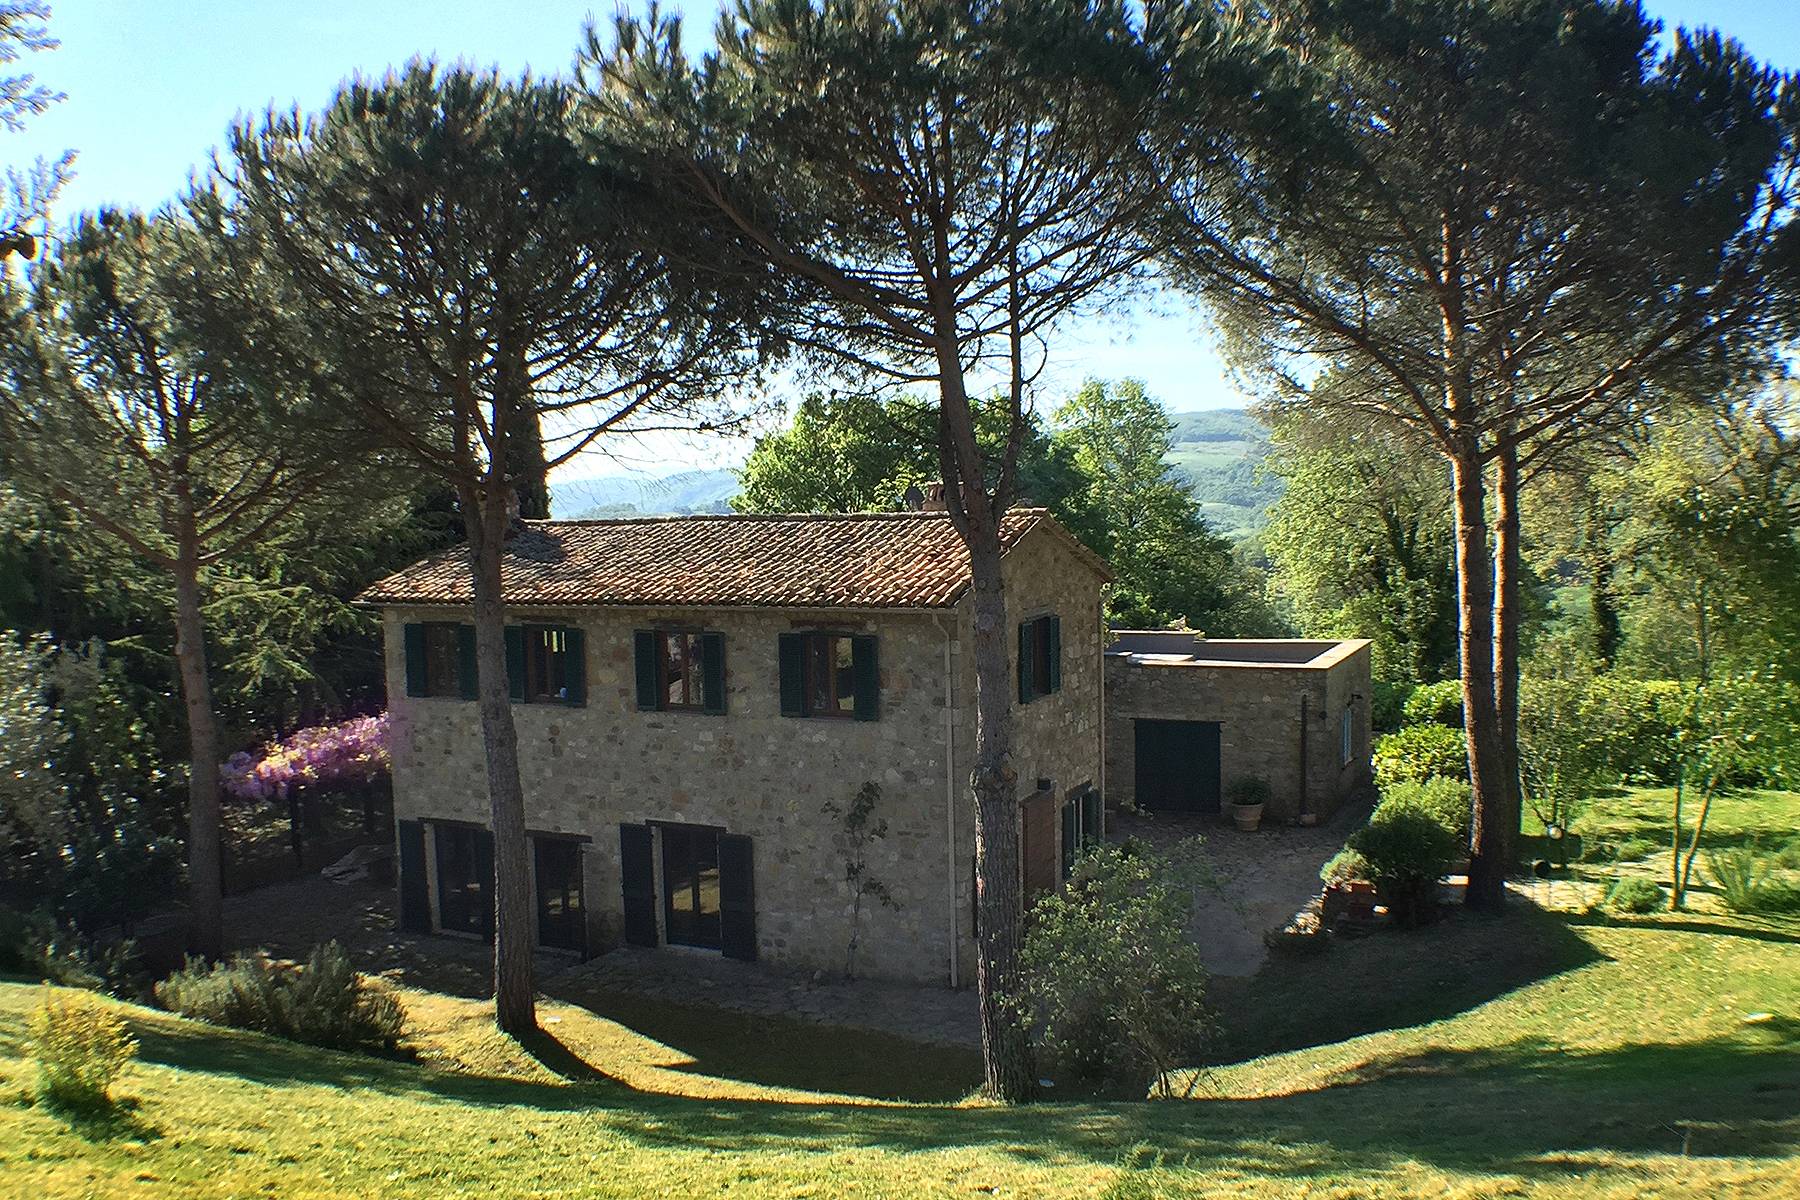 Villa in Vendita a Todi: 5 locali, 410 mq - Foto 1